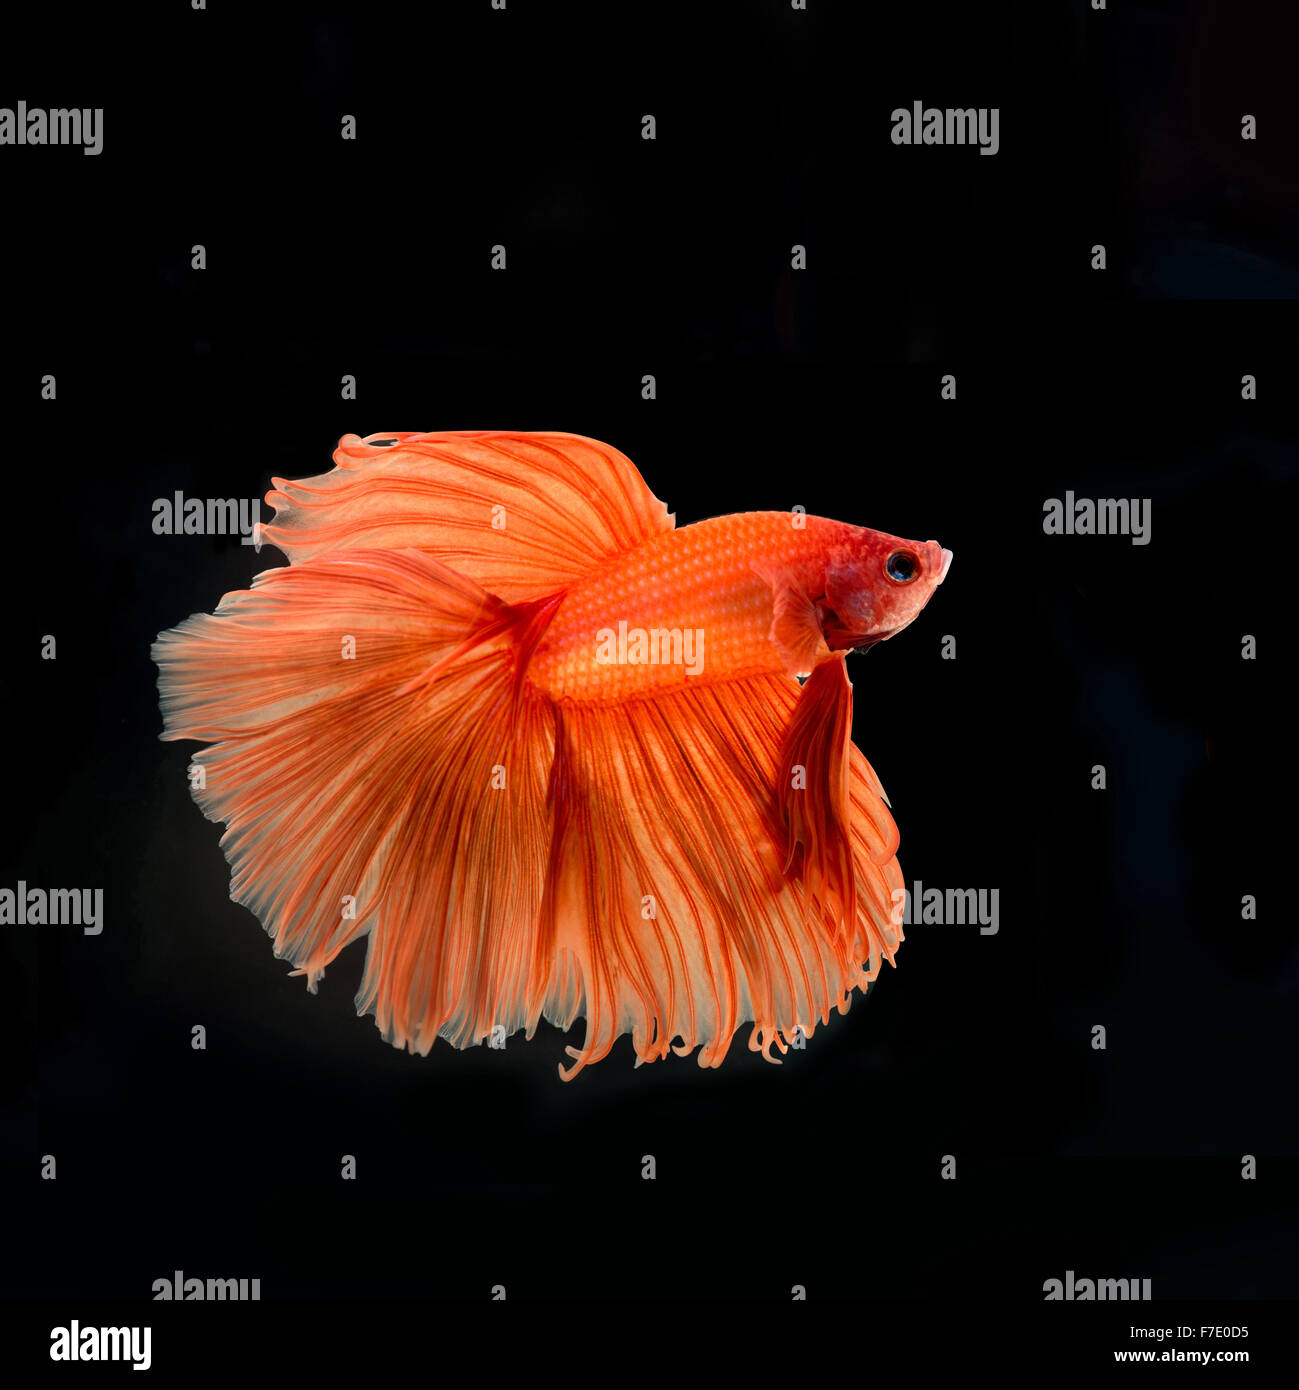 siamese fighting fish Stock Photo